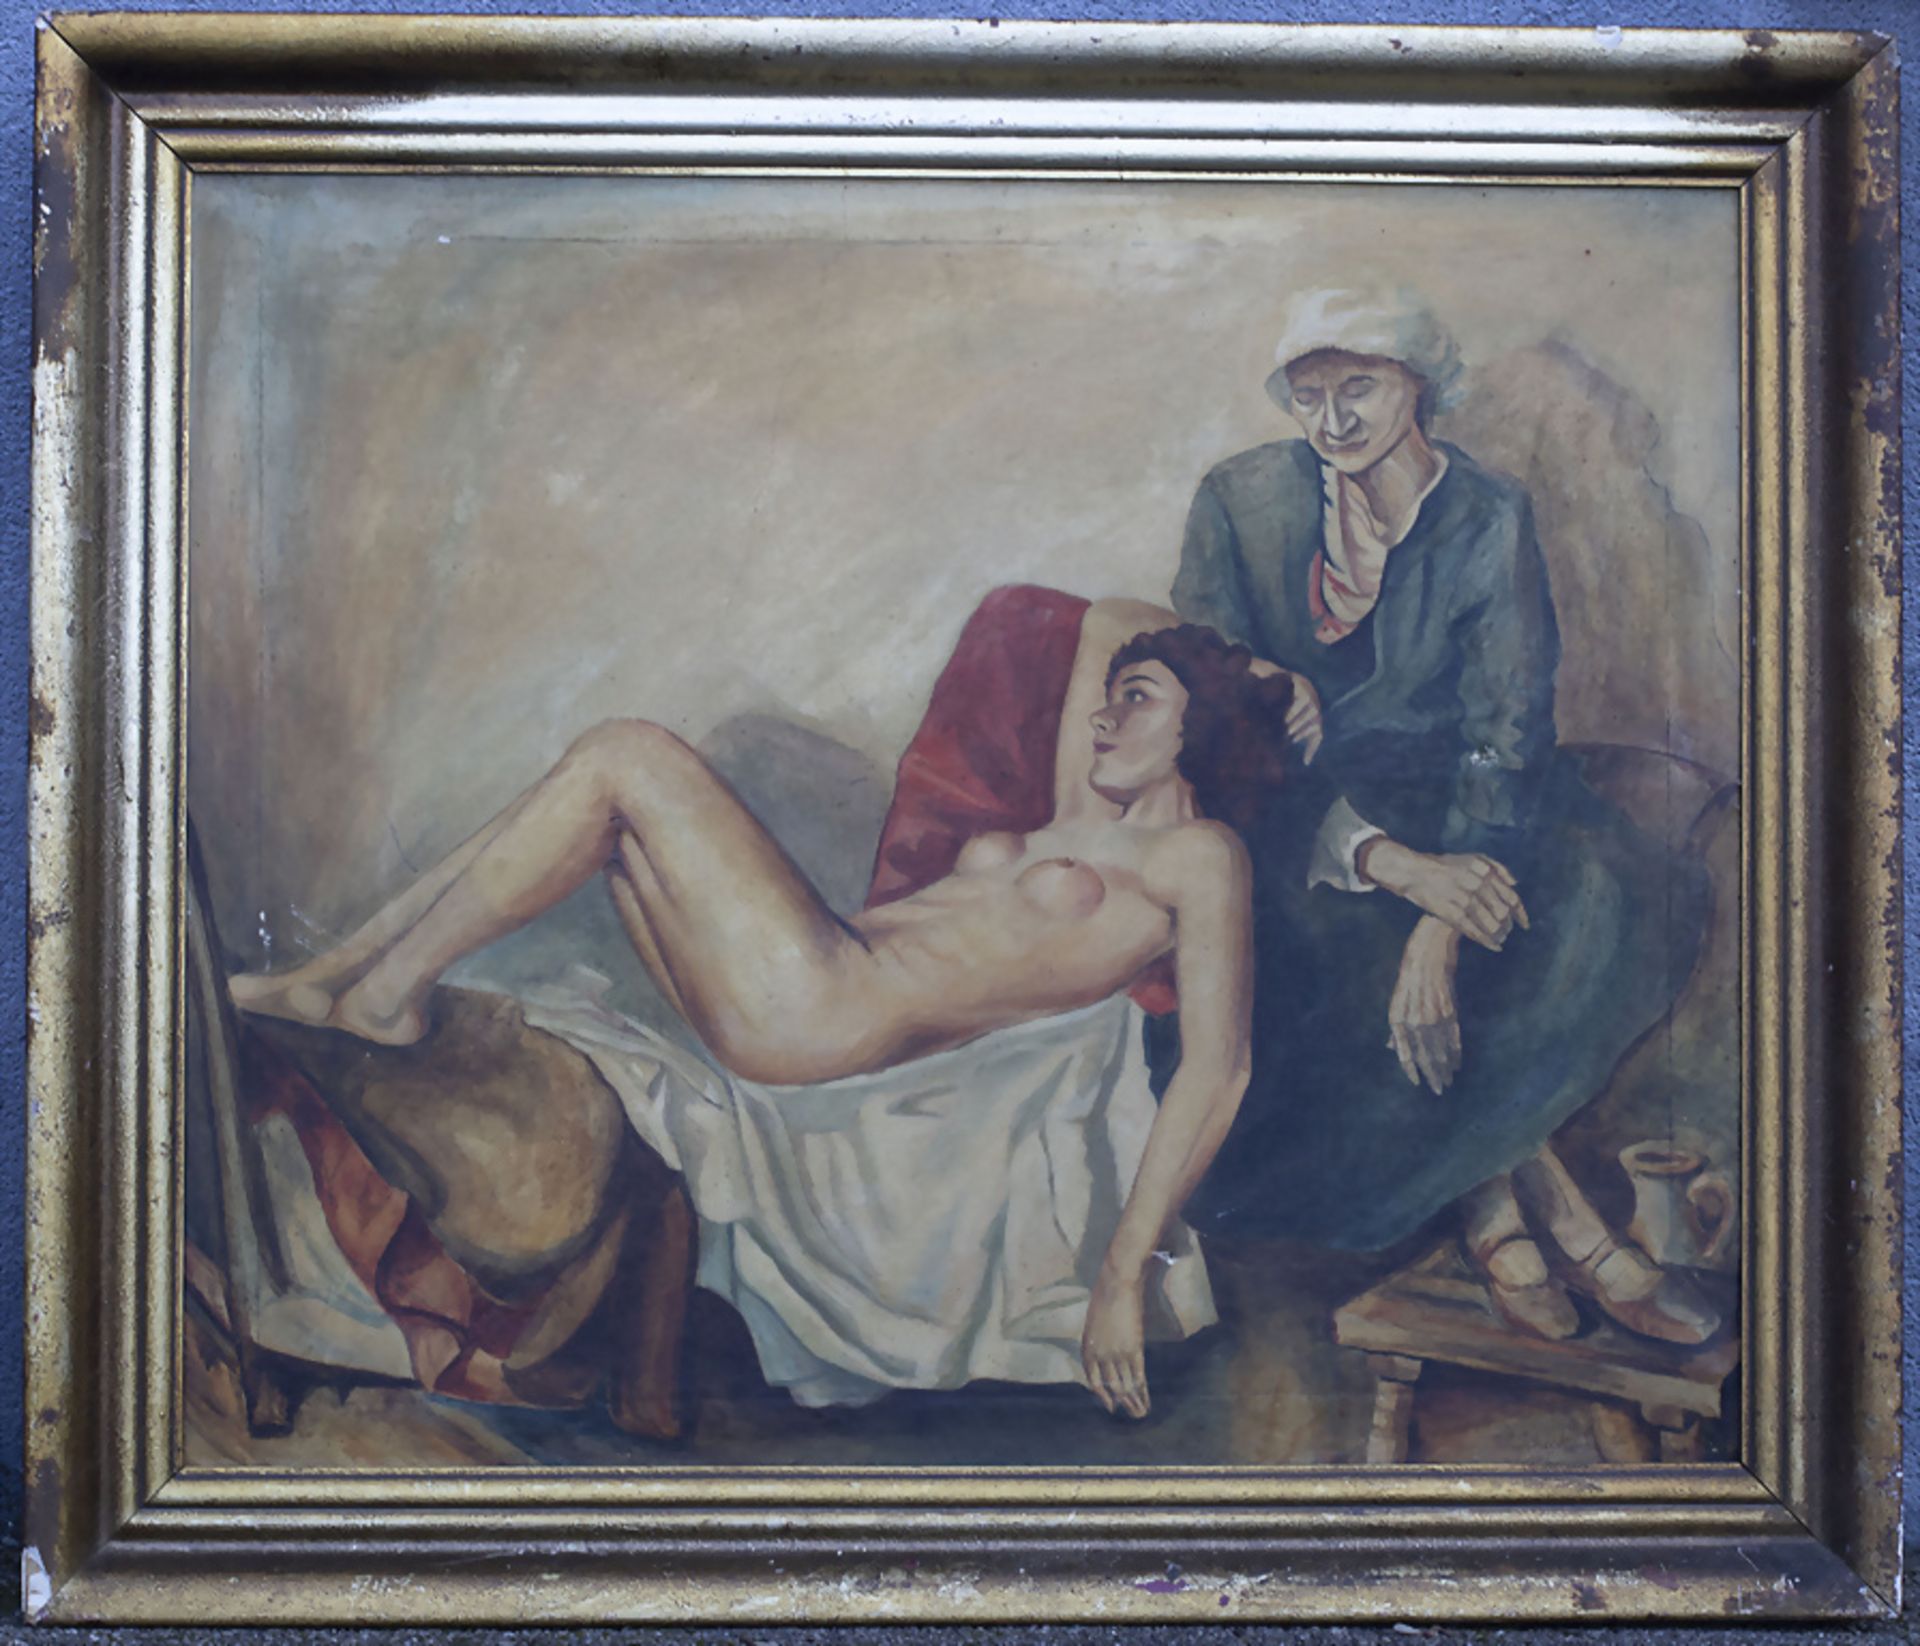 W. Schick, 'Akt mit Mutter' / A nude with mother, 1941 - Bild 2 aus 8